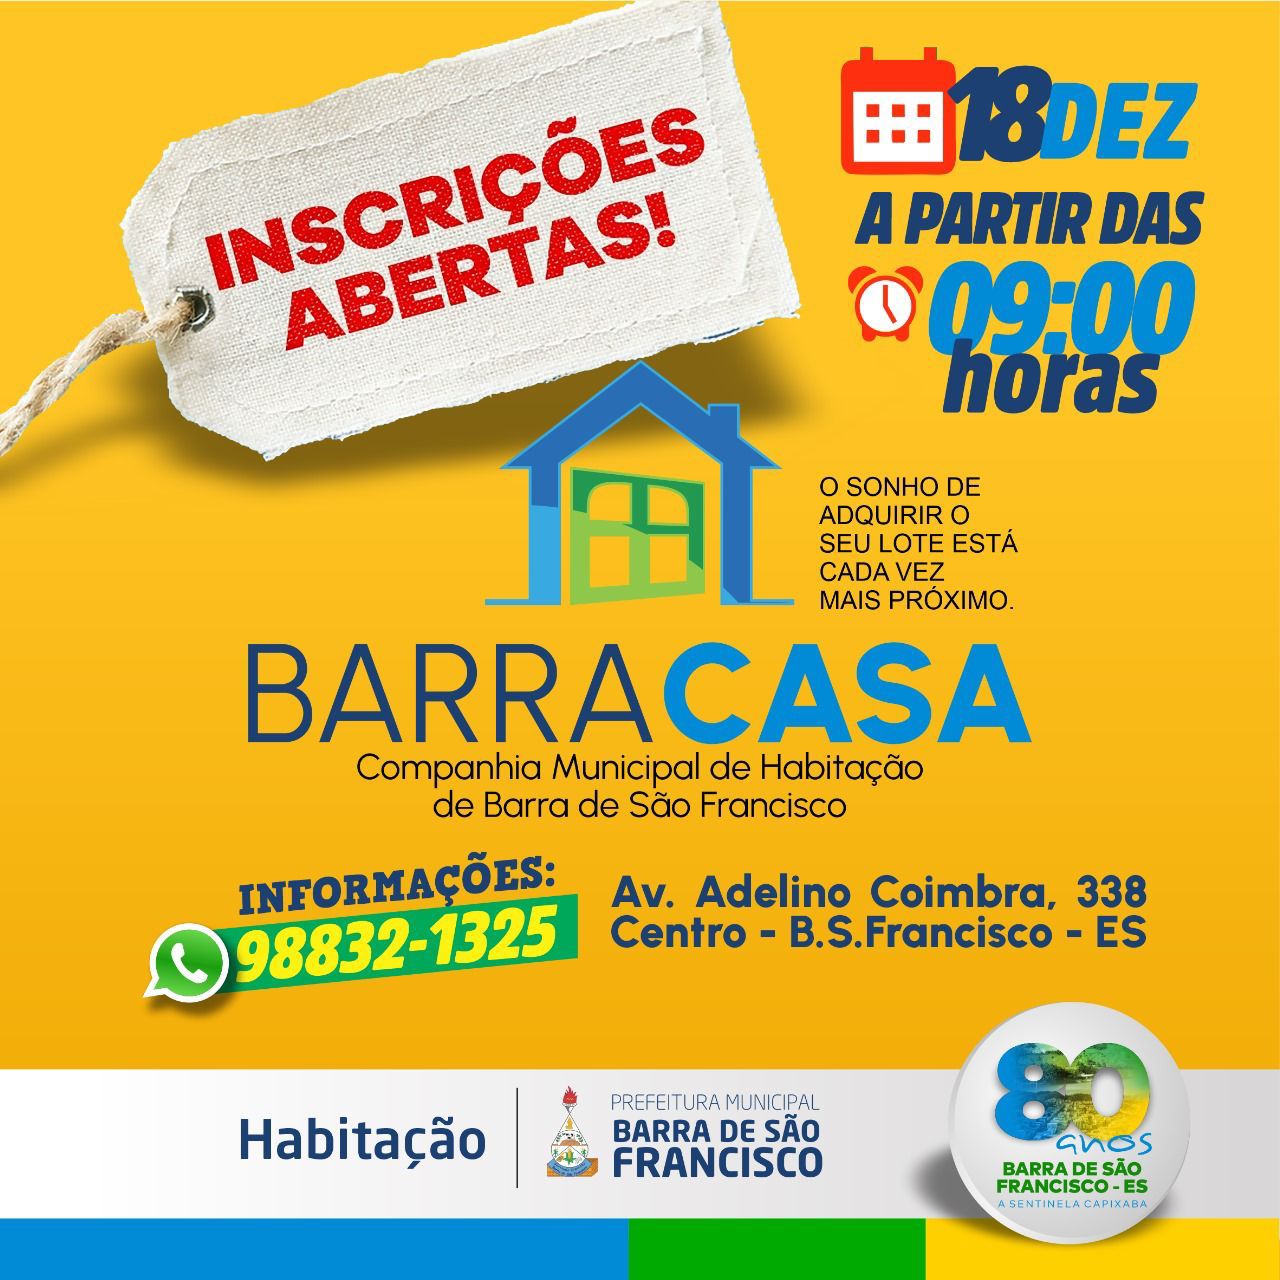 Barracasa começa a receber inscrições para compra de lotes em Barra de São Francisco nesta segunda, 18